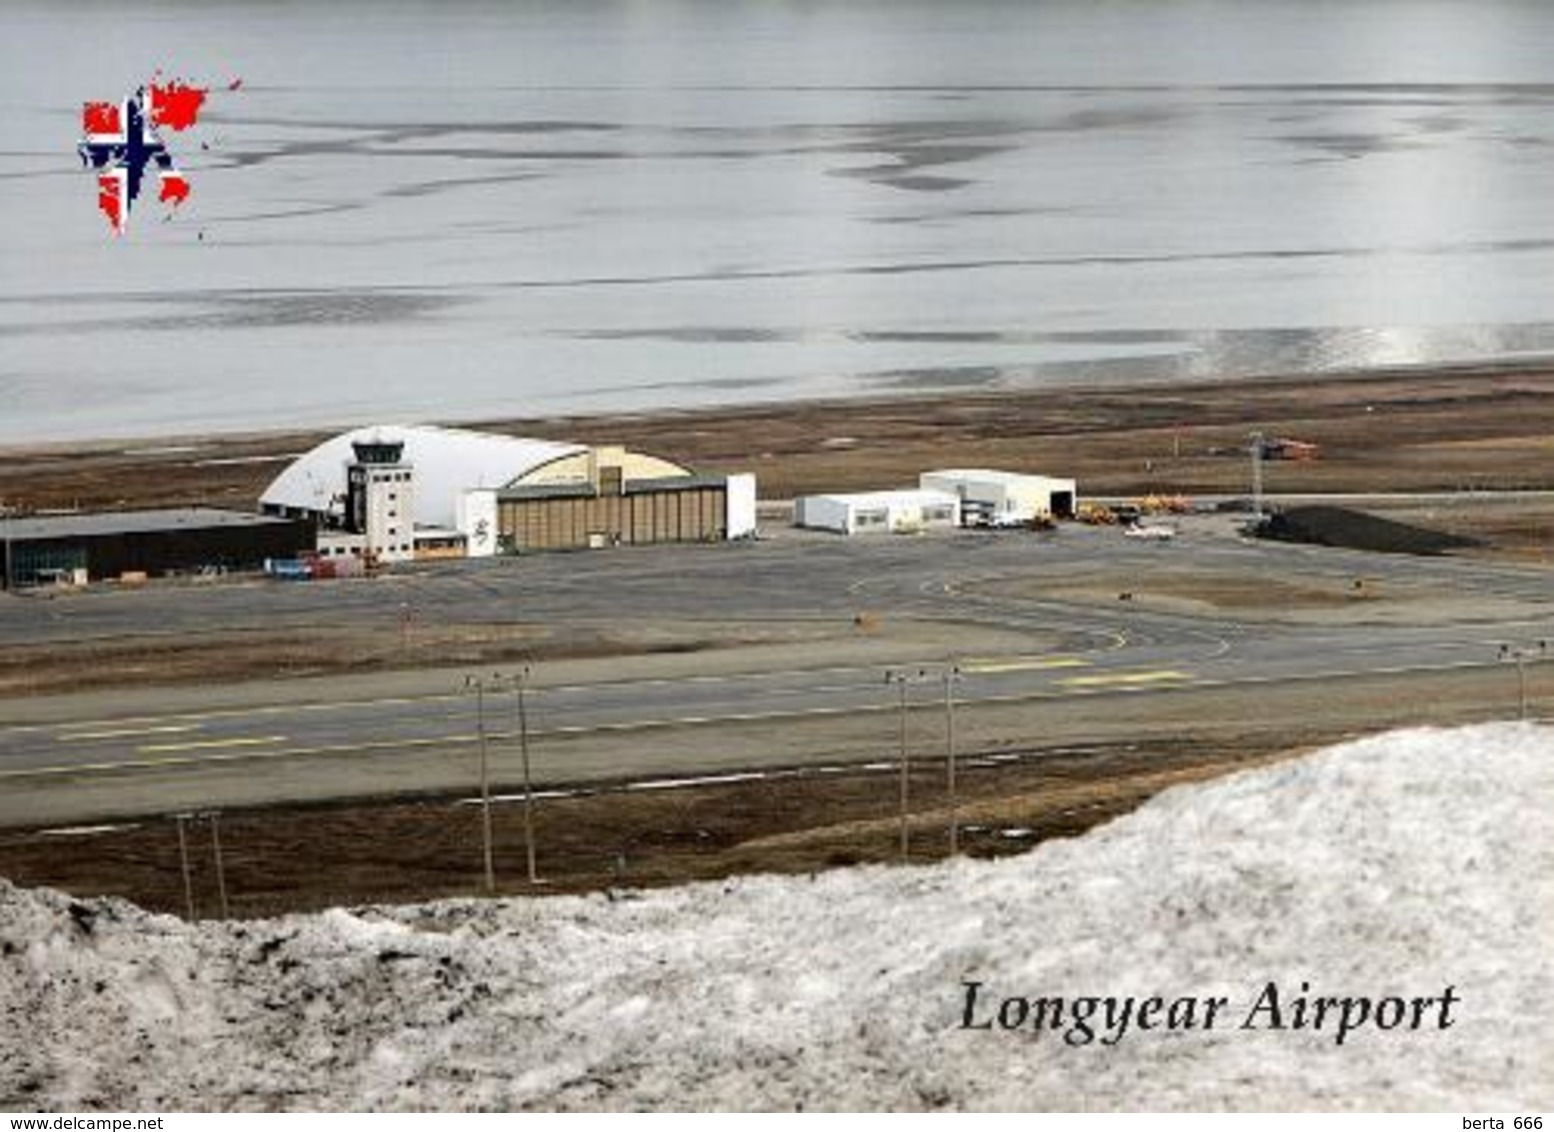 Svalbard Islands Longyerbyen Airport Aerial View New Postcard Spitzbergen Flughafen AK - Norwegen